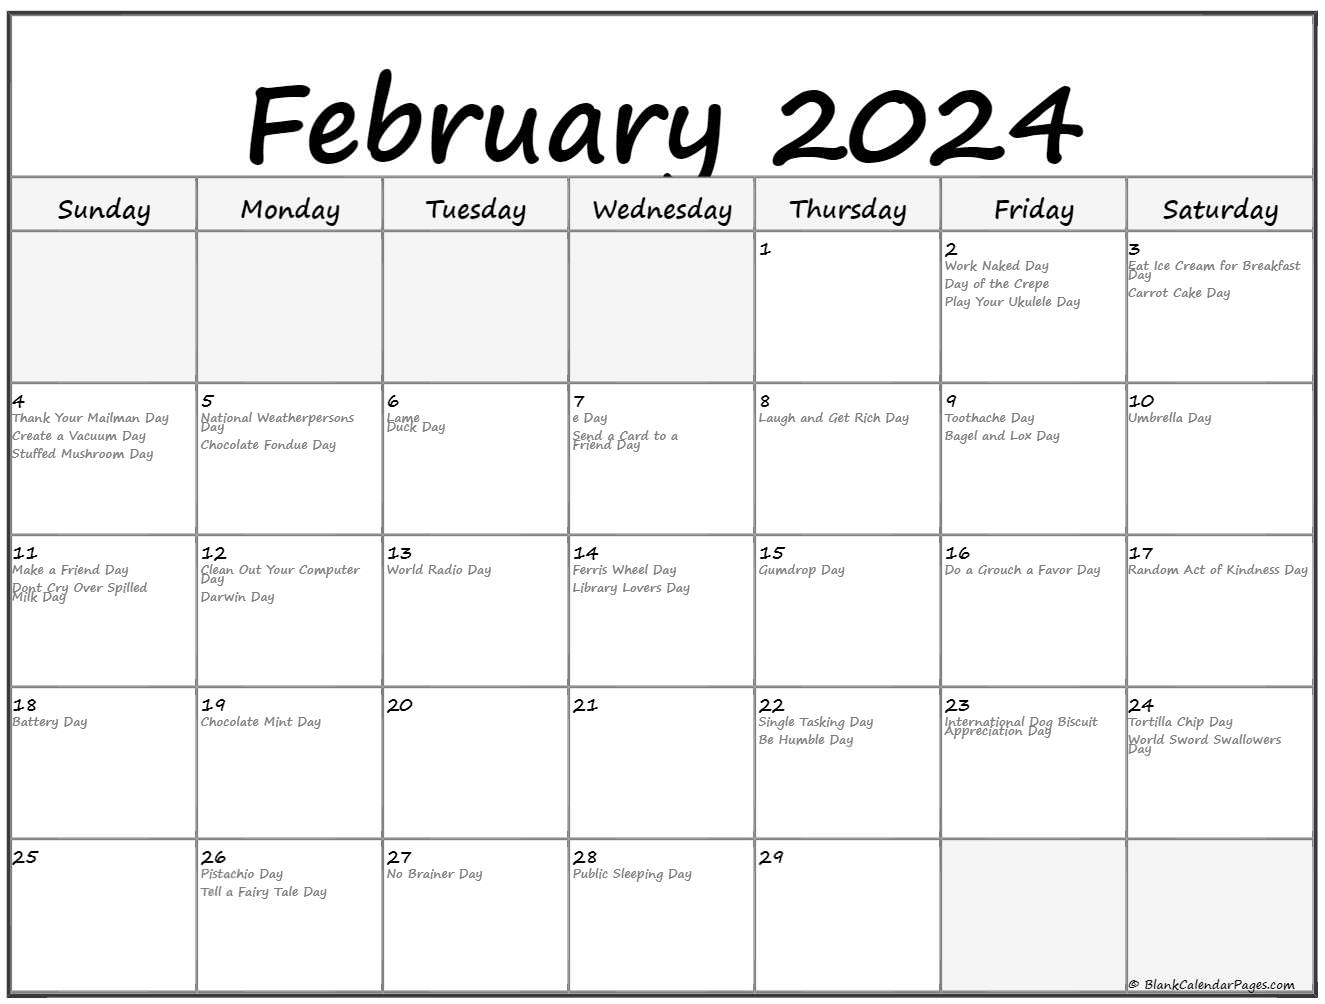 Wordle 20 February 2024 Holidays Alis Lucina